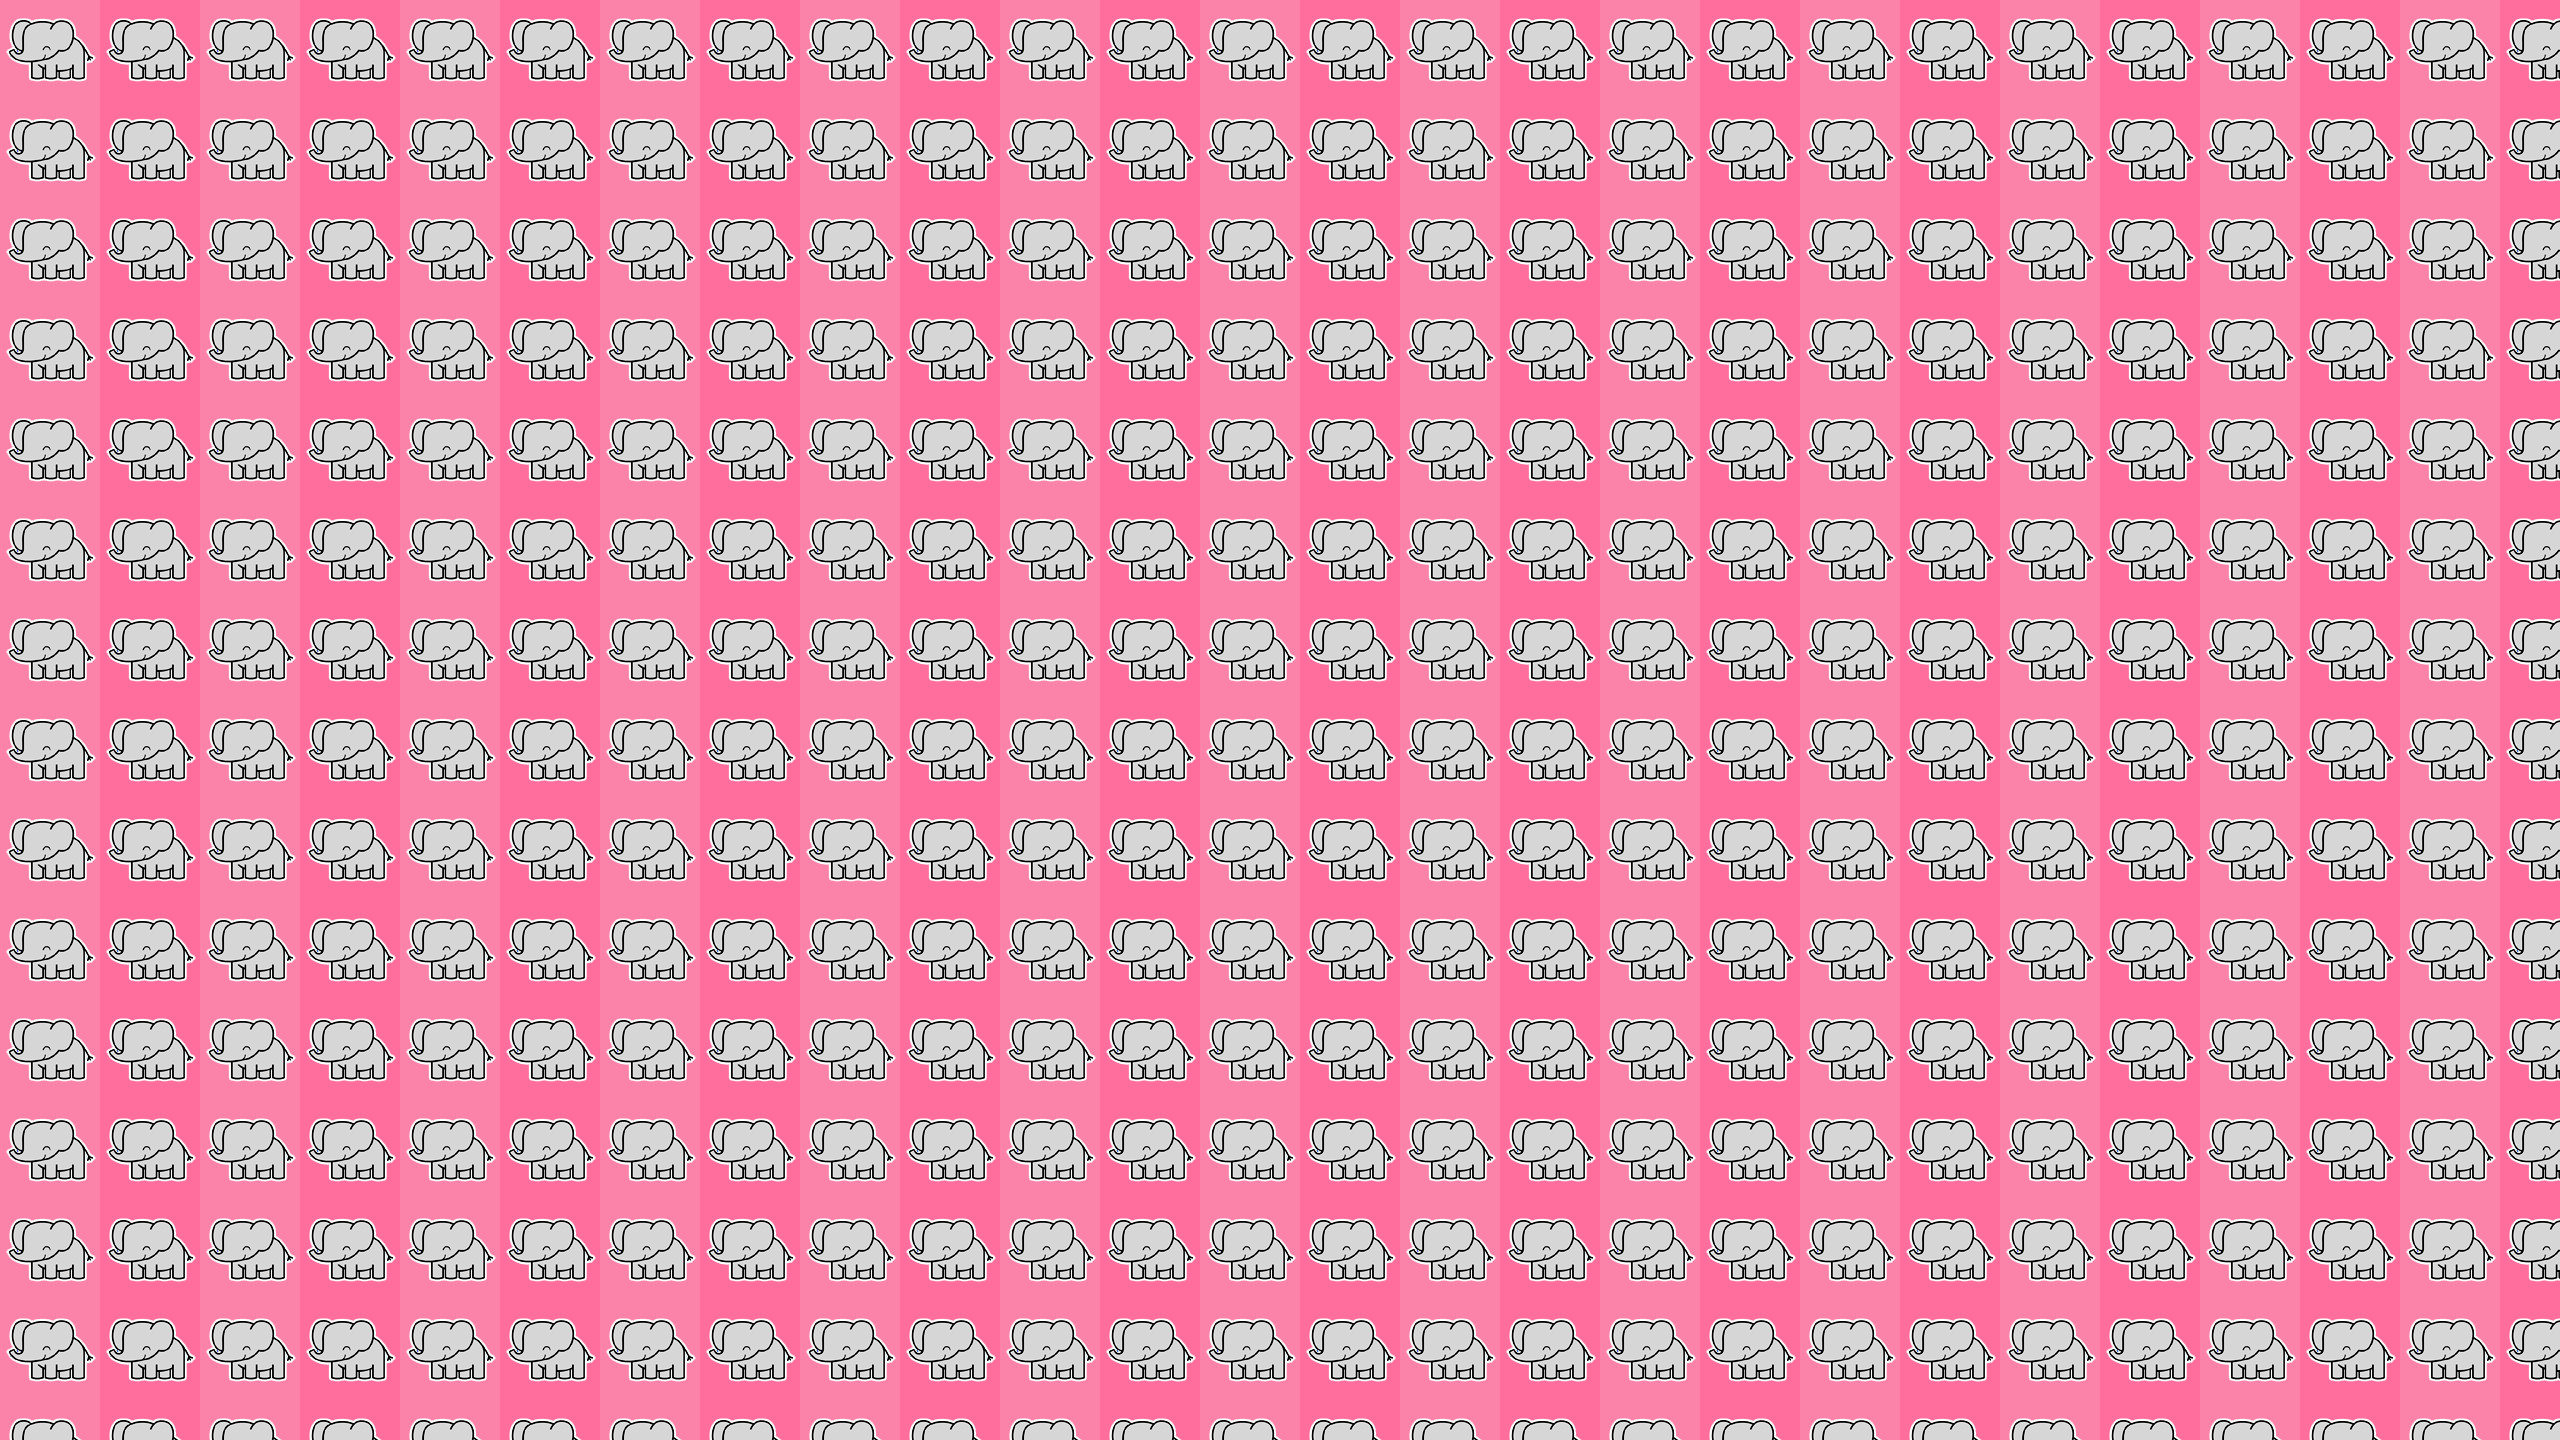 2560x1440 Best 20 Elephant wallpaper ideas on Pinterest